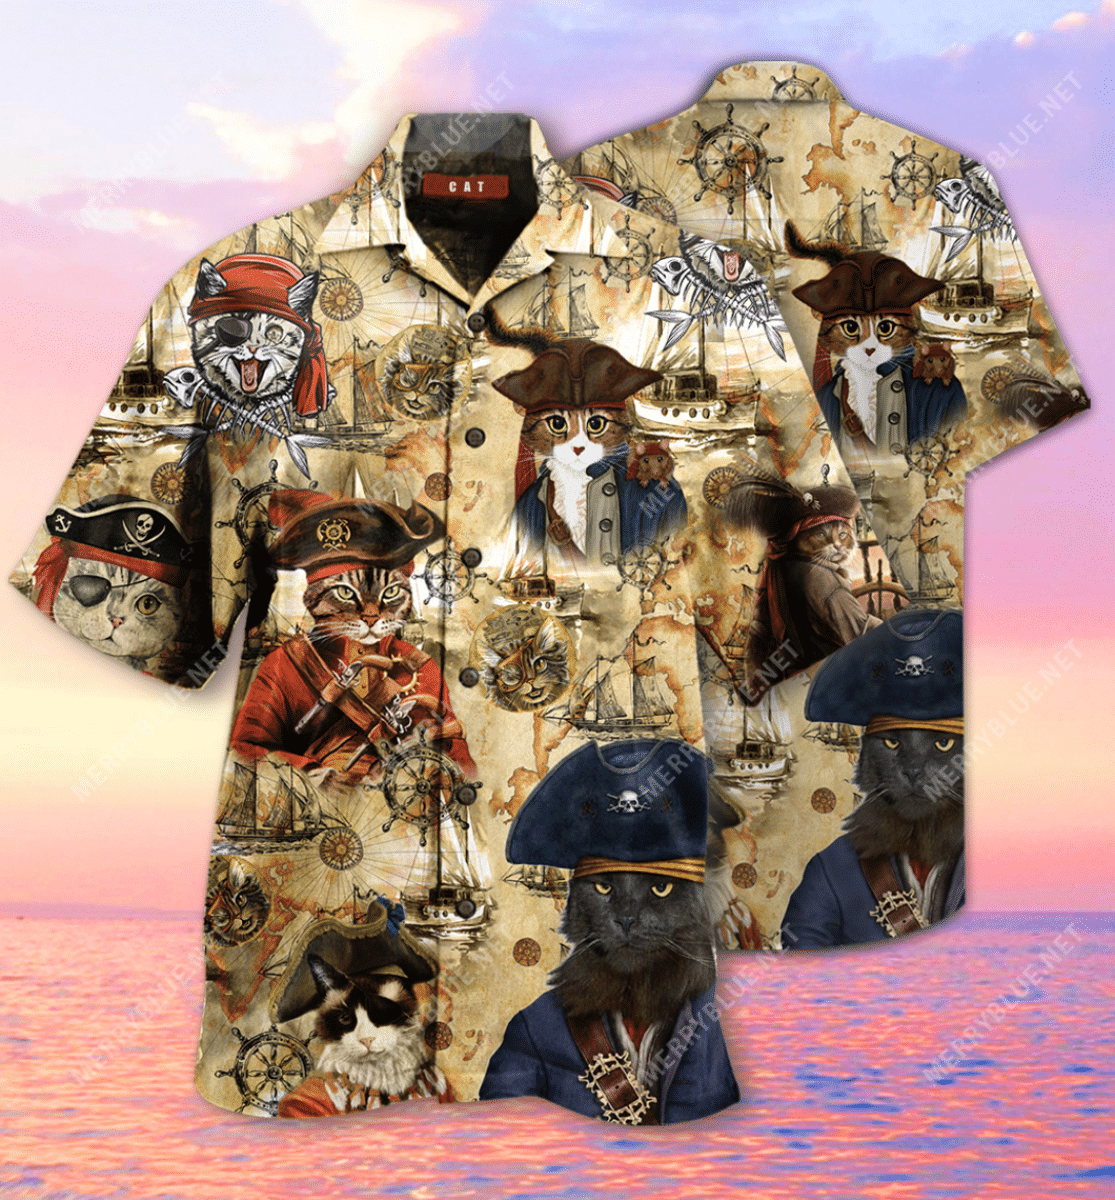 Amazing Pirate Cat Unisex Hawaiian Shirt